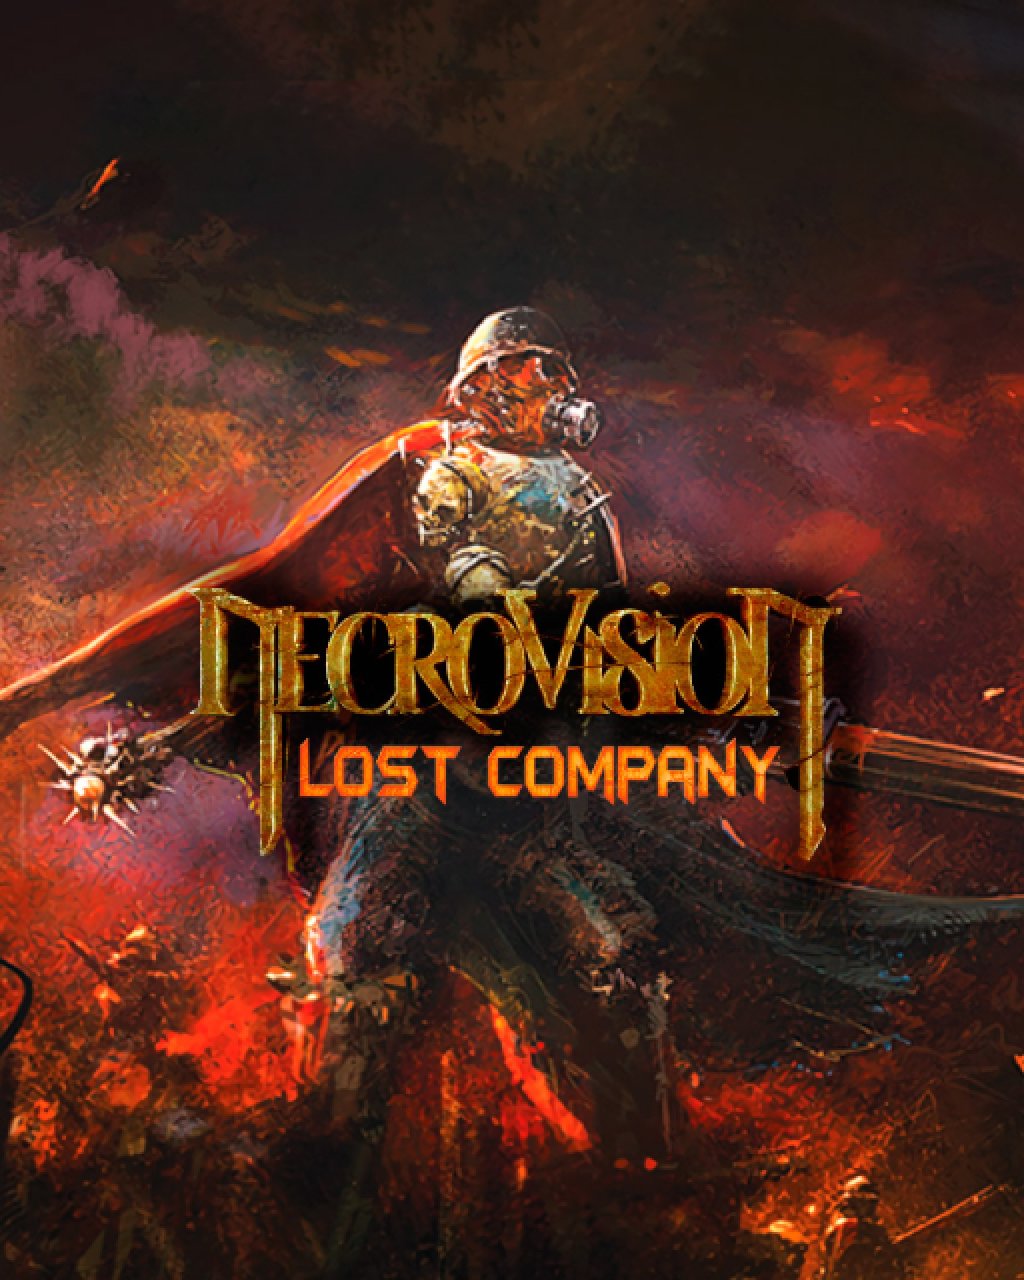 NecroVisioN Lost Company